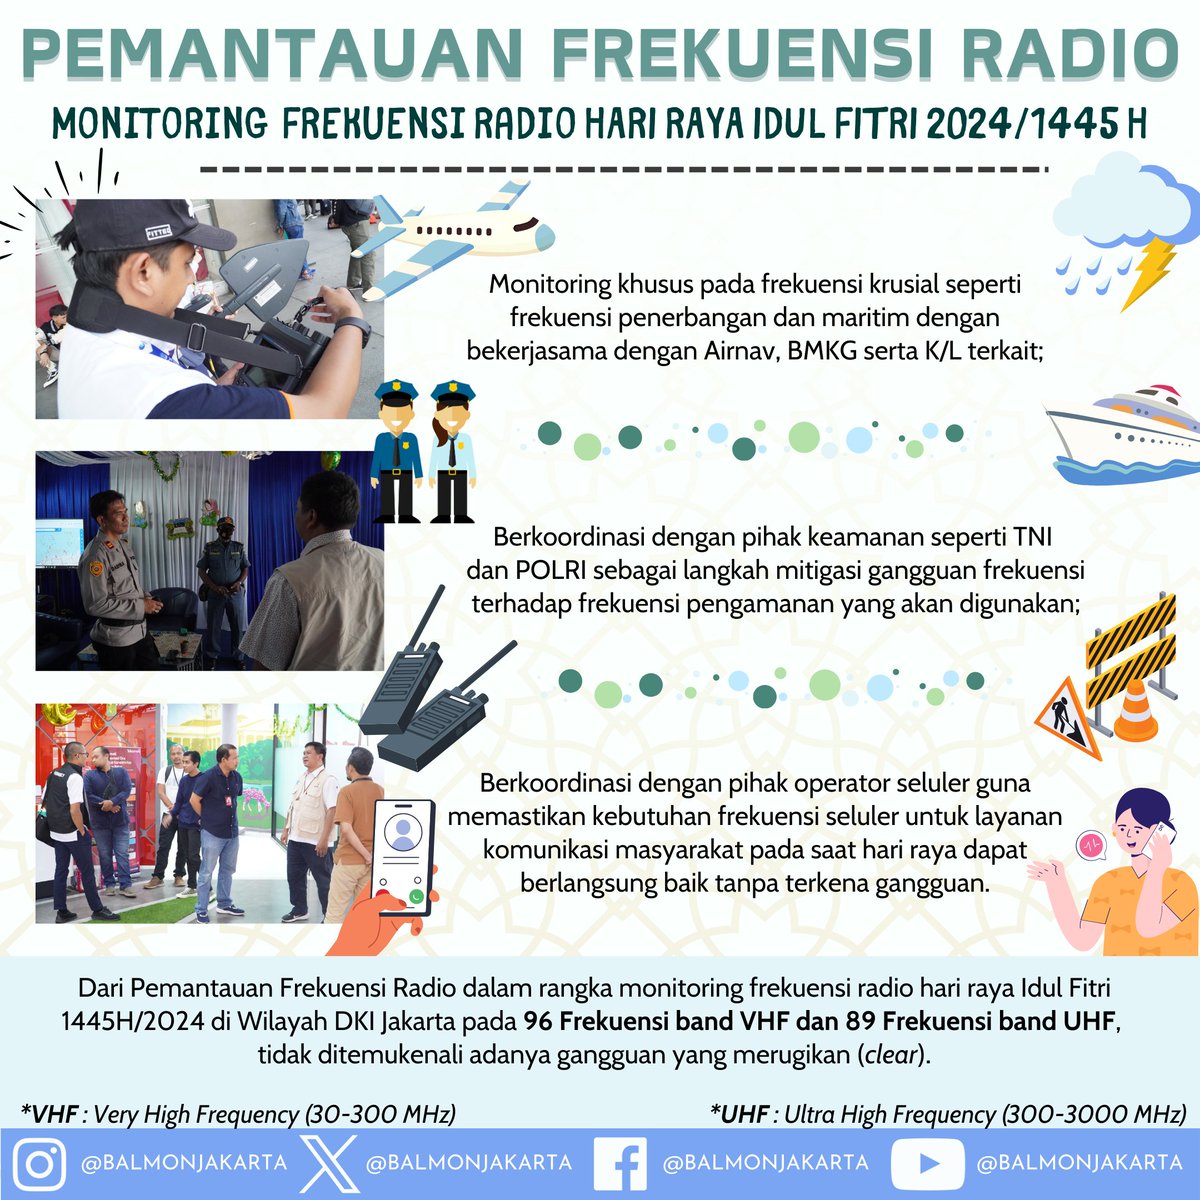 Halo #SahabatFrekuensi 🙏🏽😄
Balmon SFR Kelas I Jakarta turut hadir dalam memberikan pelayanan posko monitoring lebaran selama periode 06 - 15 April 2024

(3)
#IdulFitri #IdulFitri2024 #Lebaran2024 #Lebaran #PoskoLebaran #PoskoMonitoring #MonitoringFrekuensiRadio #FrekuensiRadio